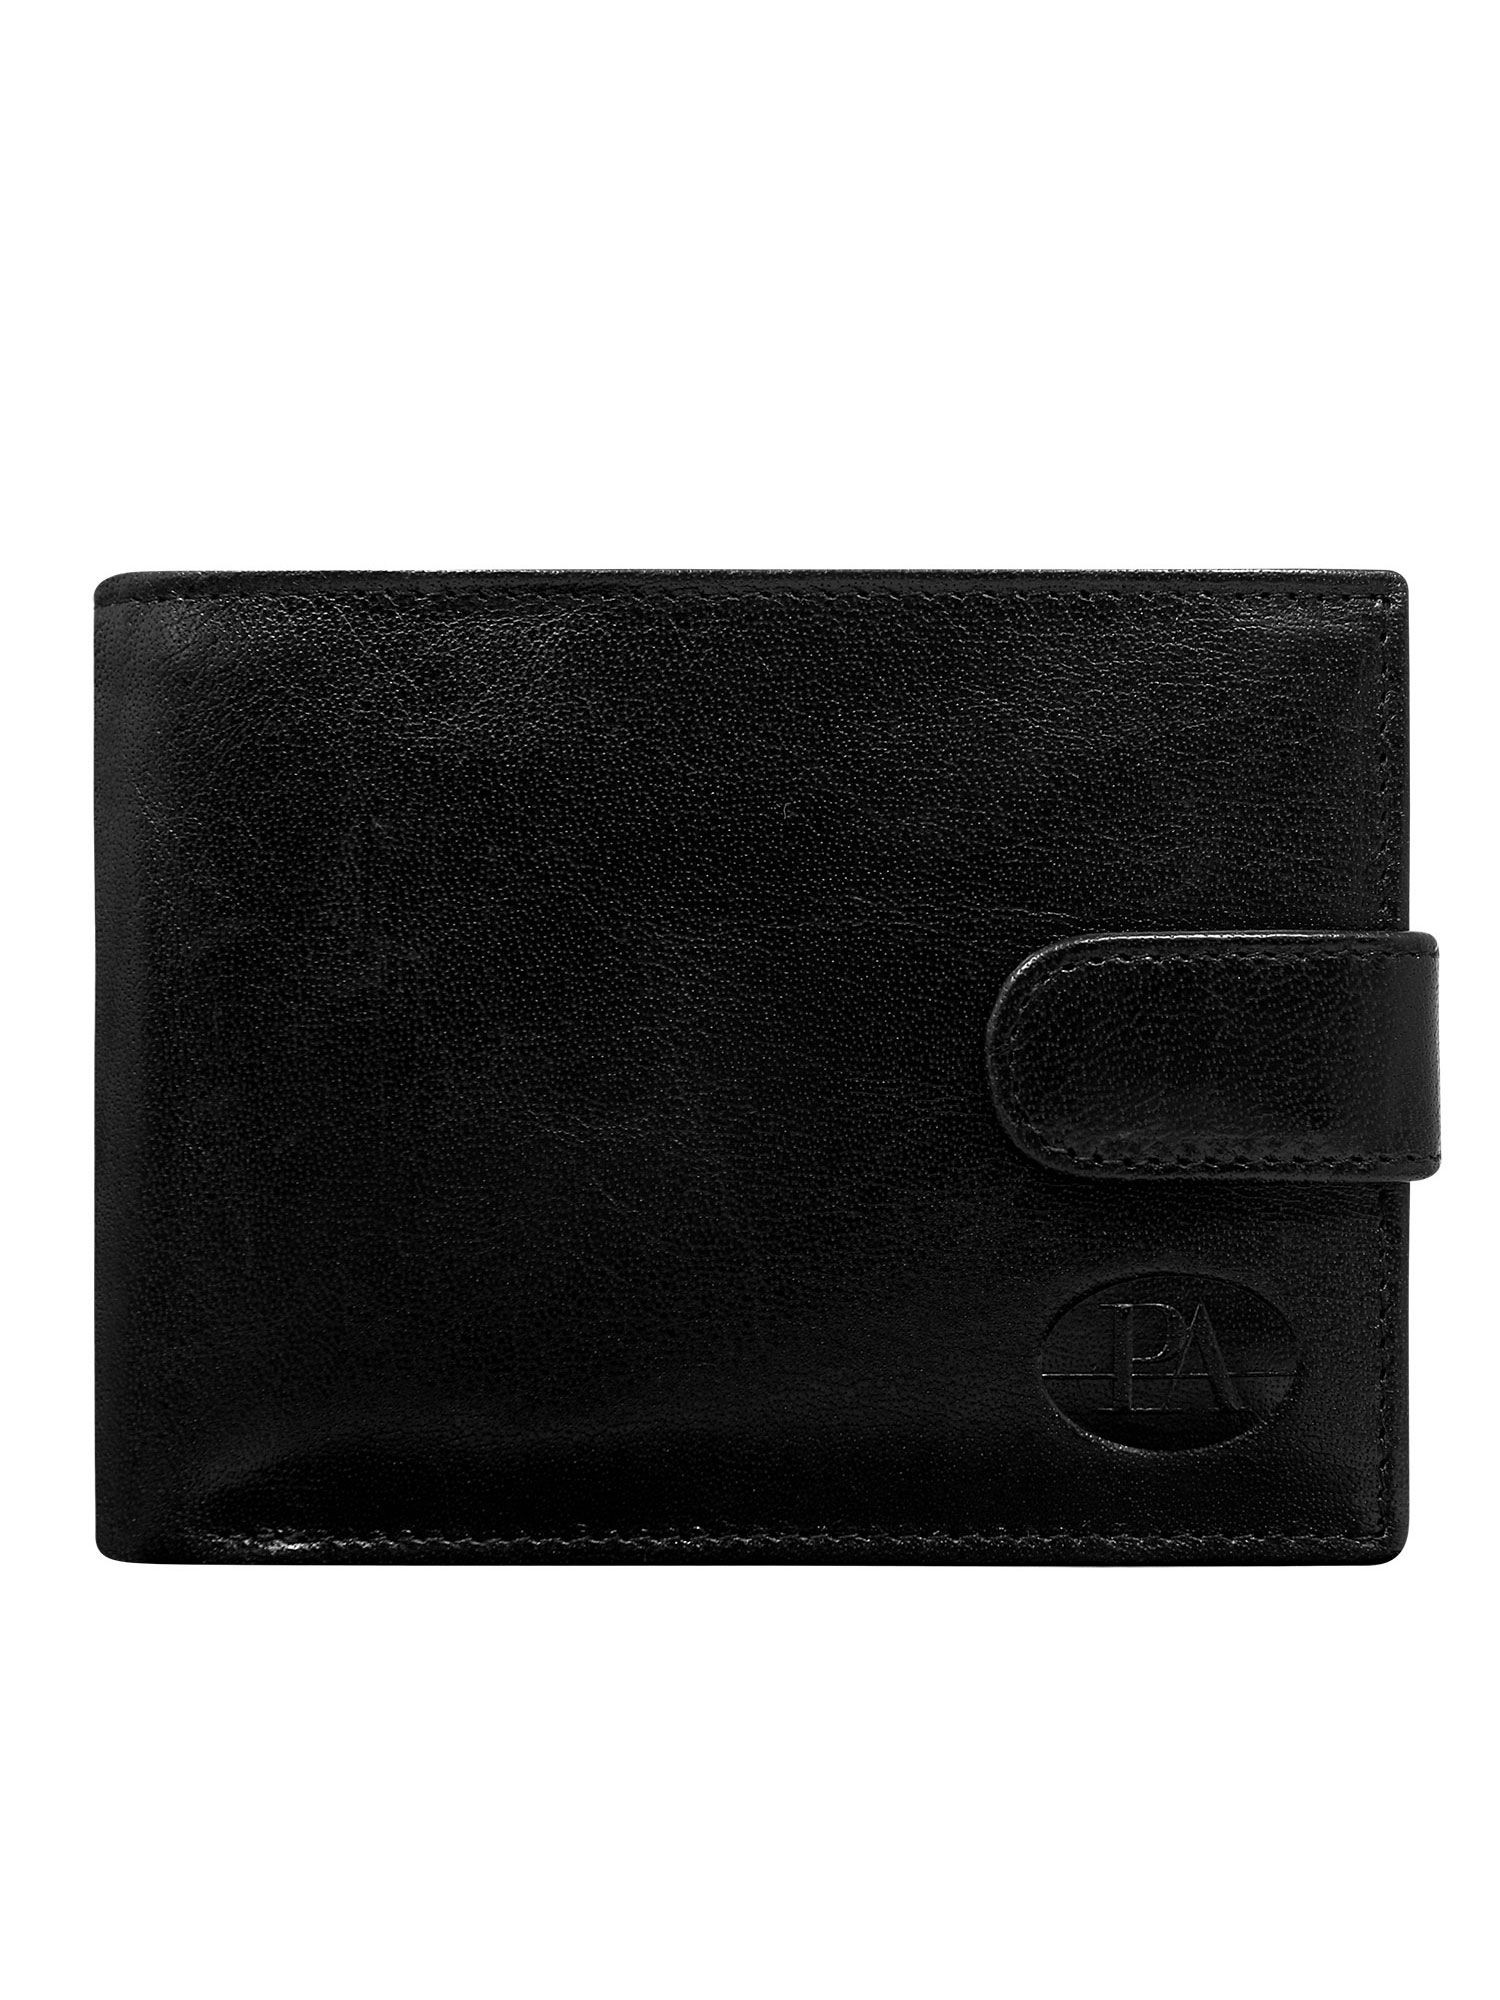 Peněženka CE PR PW černá model 14833841 - FPrice Velikost: jedna velikost